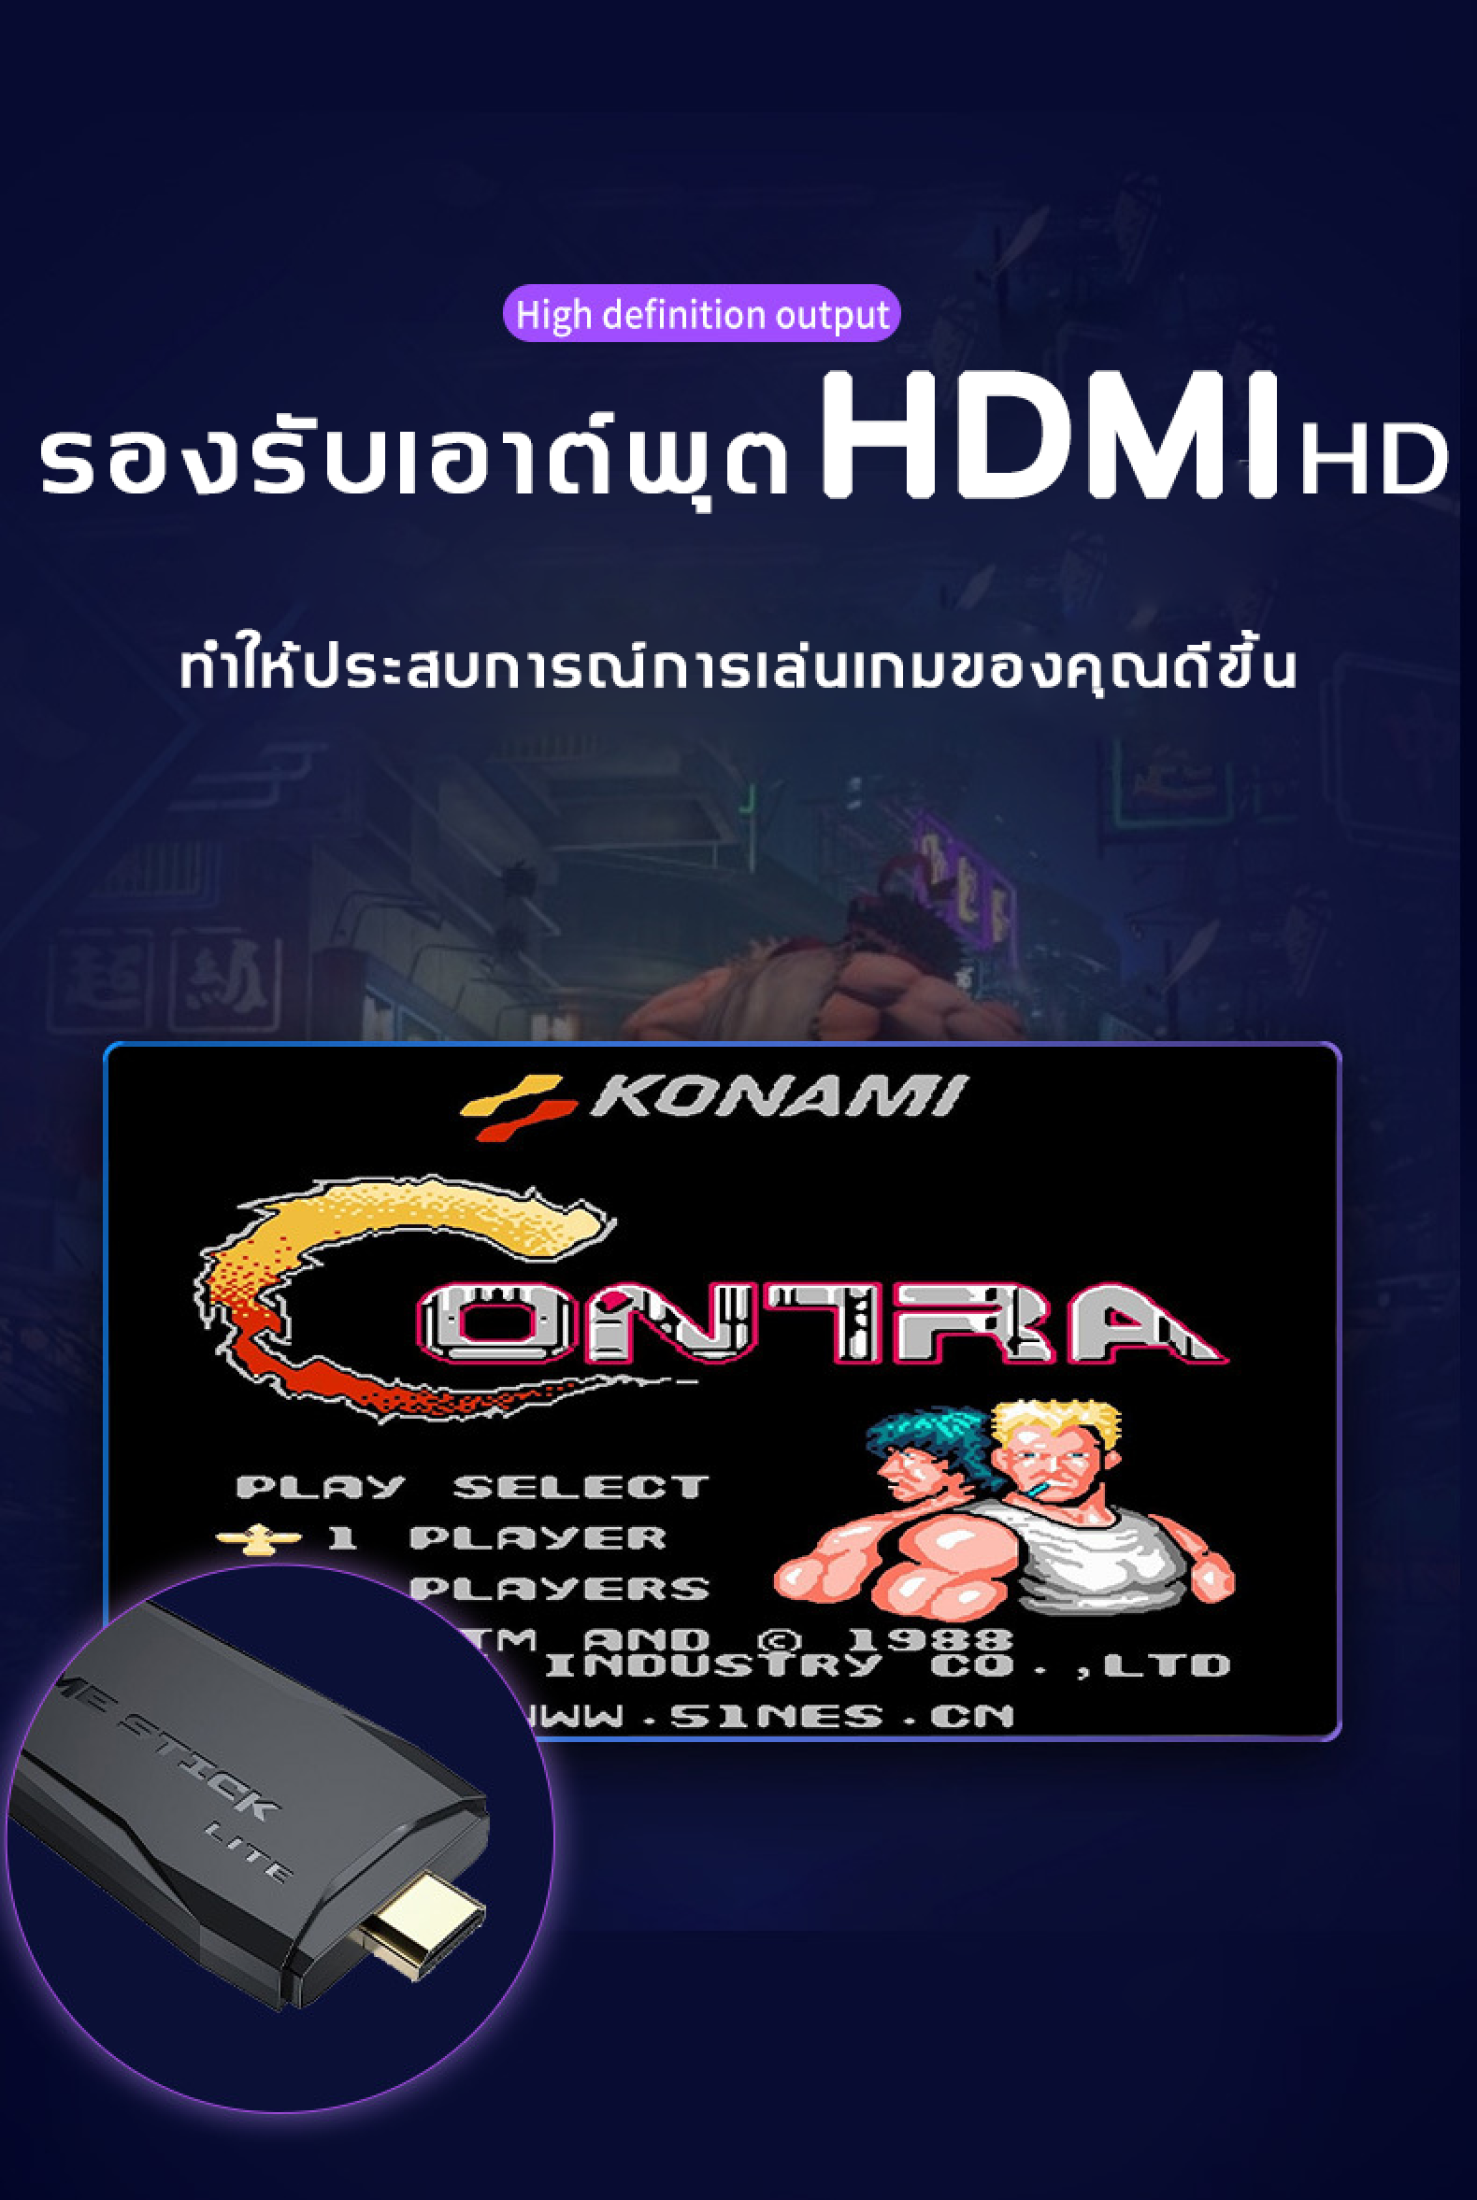 ภาพประกอบคำอธิบาย 【ท้องถิ่น】เกมคอนโซลวิดีโอเกมครอบครัว 10000 เกมรองรับ AV/HDMI Output M8รองรับการต่อสู้ผู้เล่น4คน เกมคอนโซลไร้สาย คอนโซลเกมส์ เครื่องเกม เกมคอนโ【